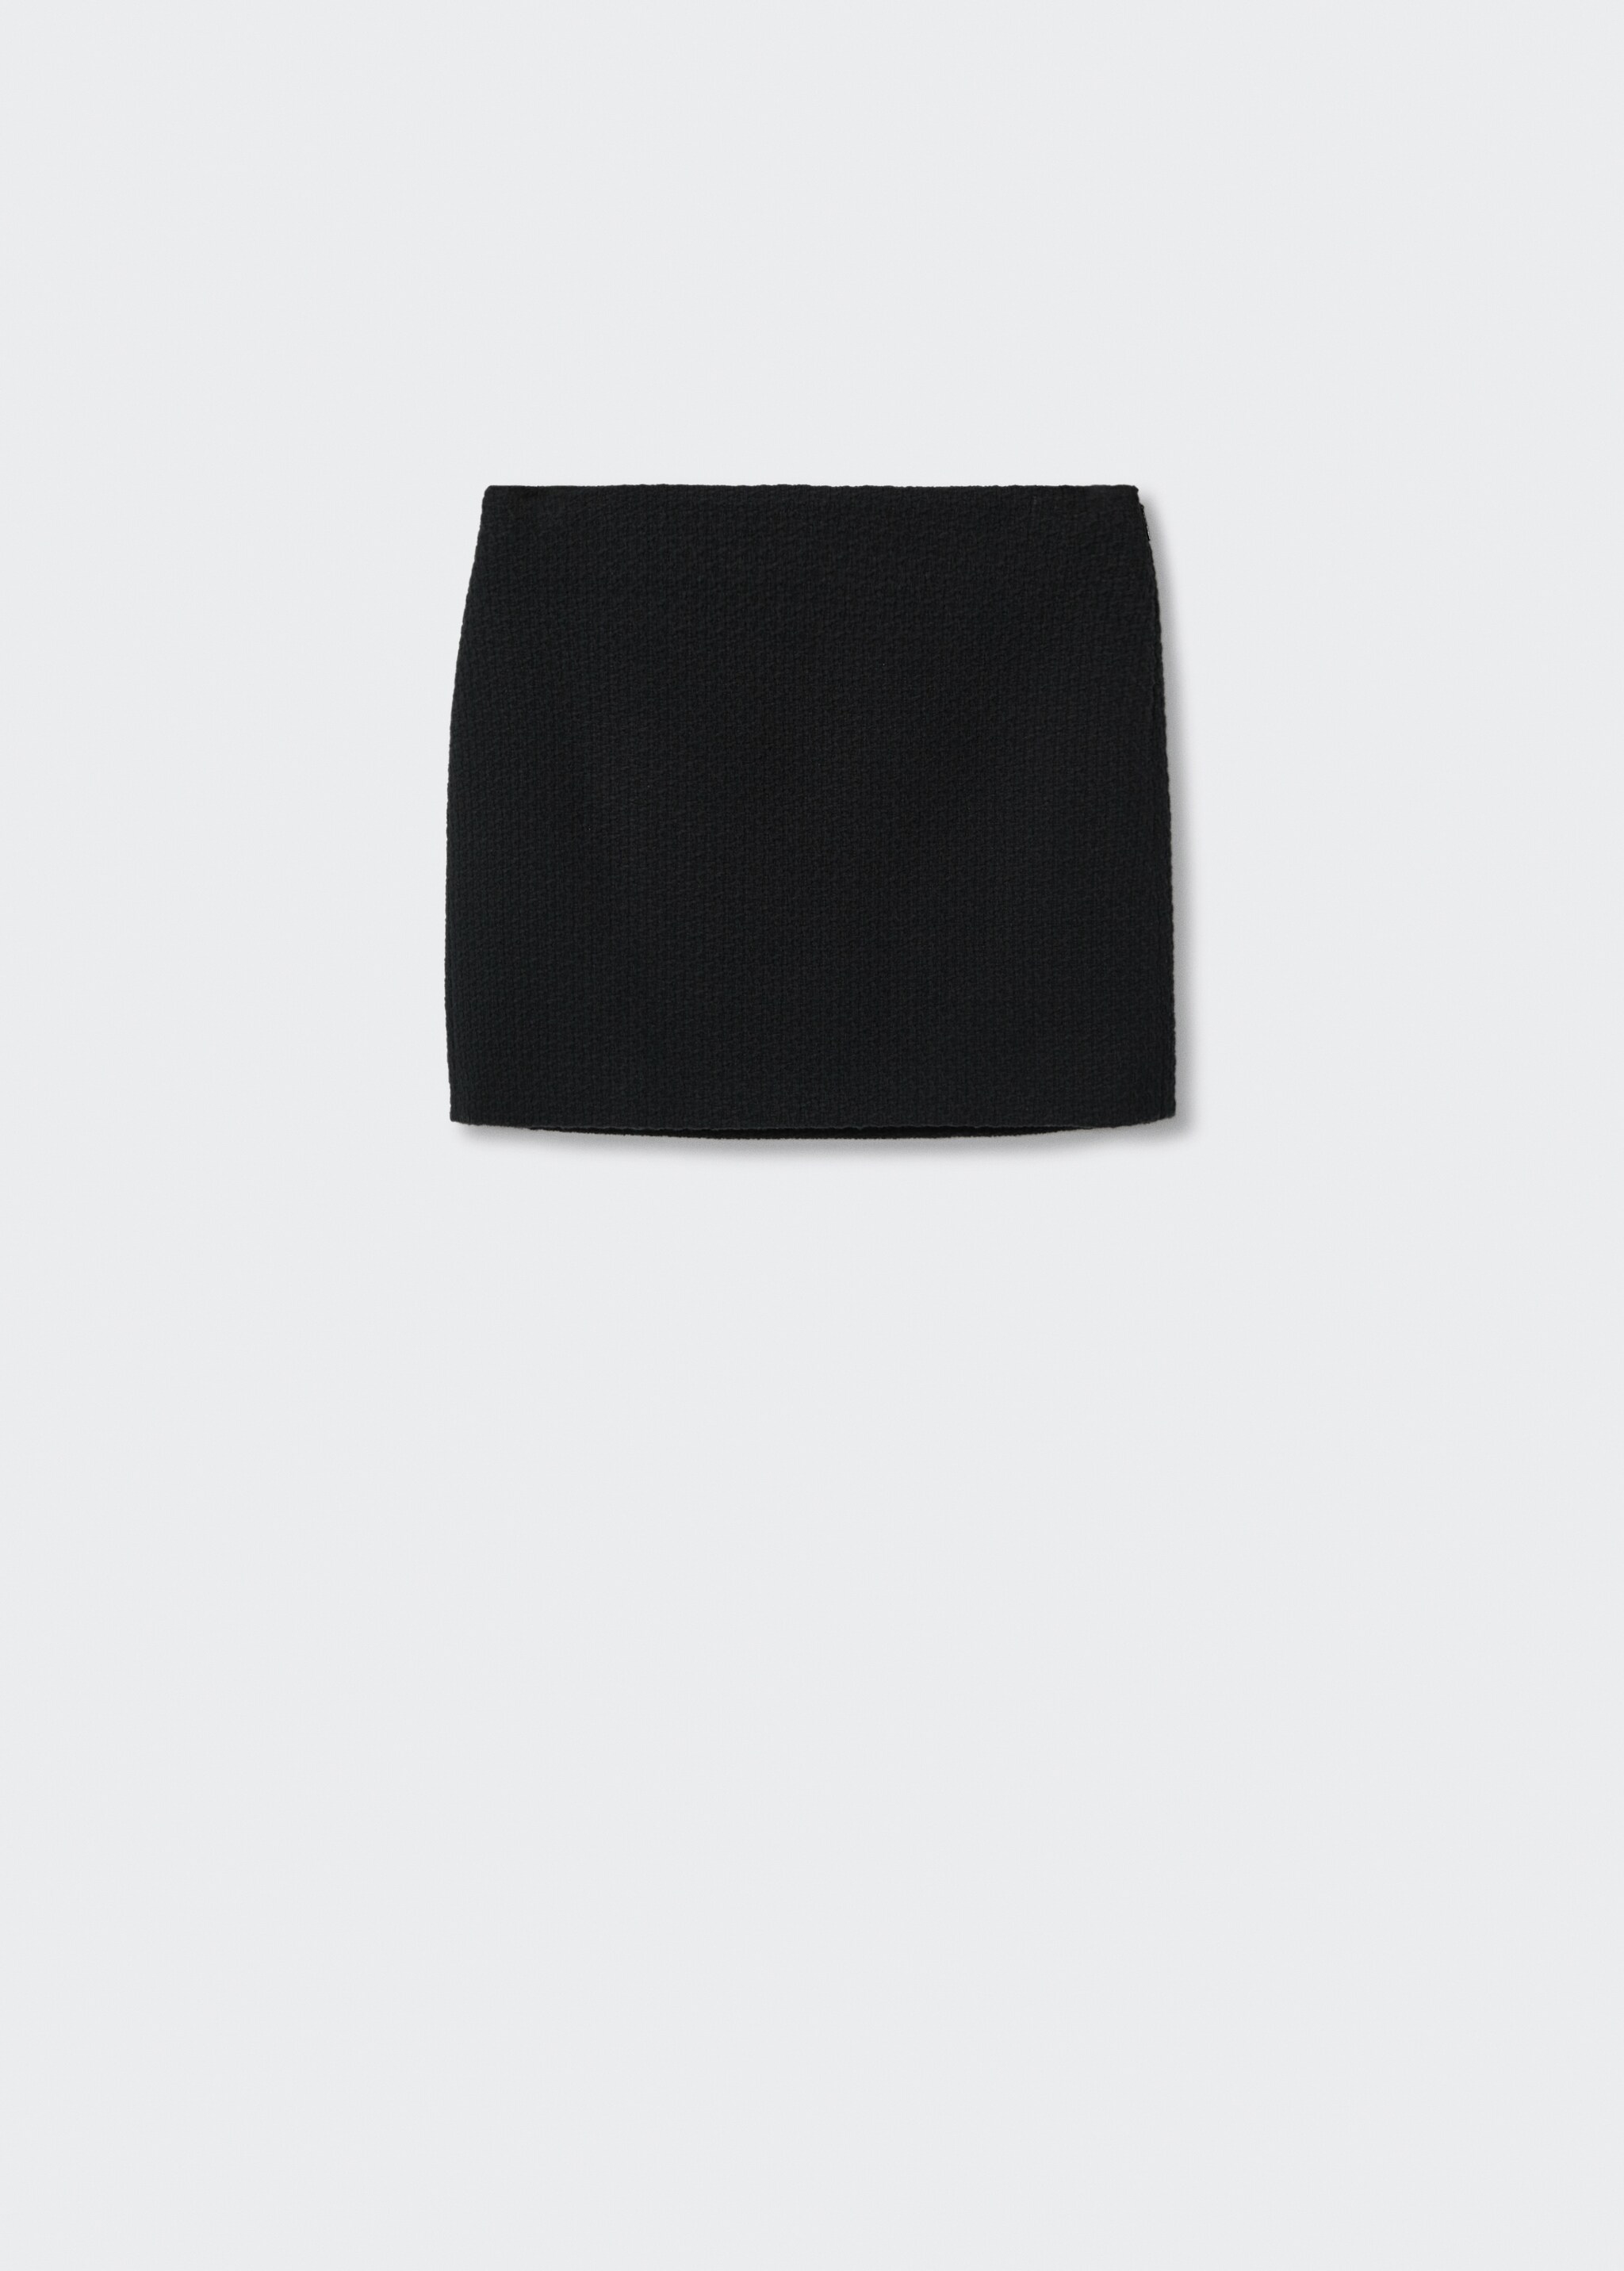 Minifalda tweed algodón - Artículo sin modelo